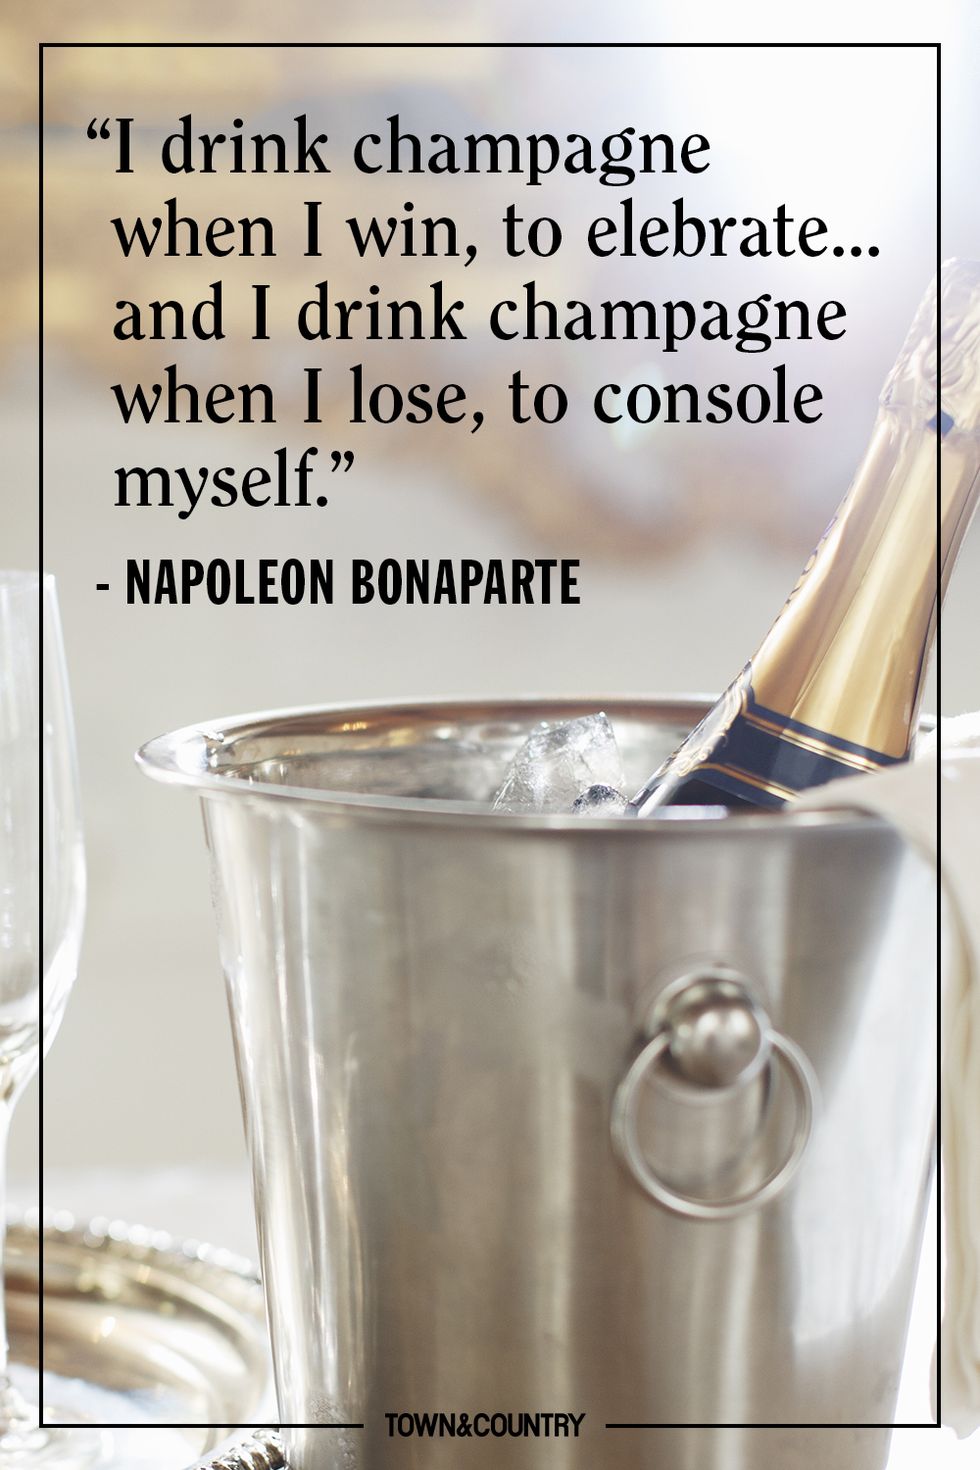 Napoleon Bonaparte Champagne Quote